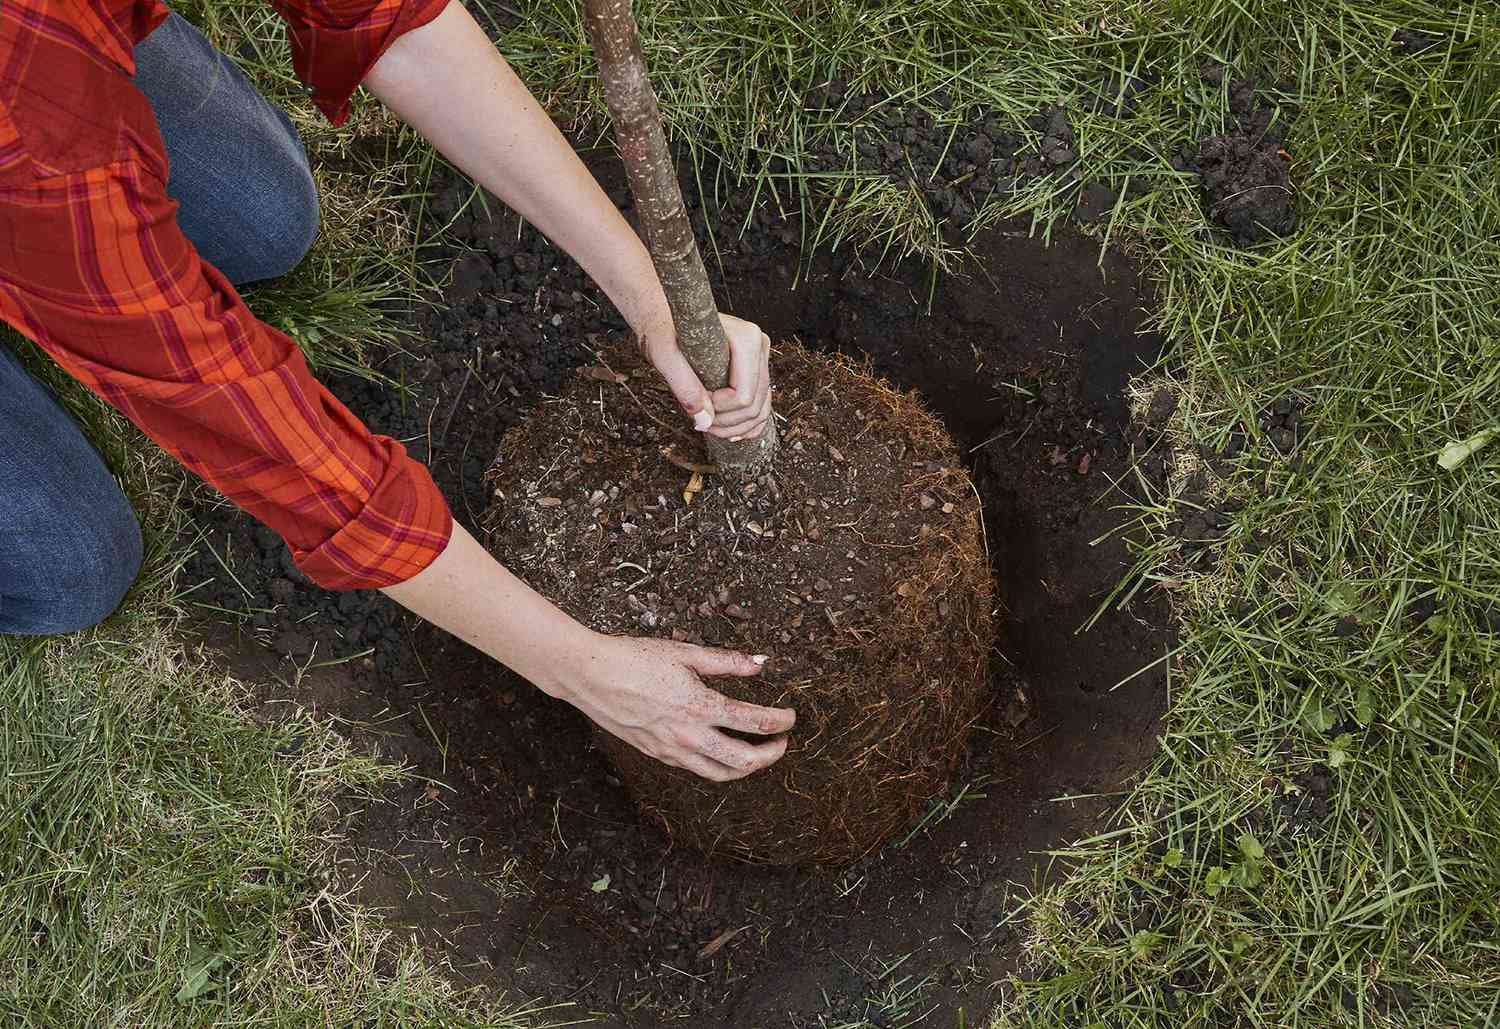 ازرع أشجارًا صغيرة يصل ارتفاعها إلى 30 قدمًا أو أقل على بعد 10 أقدام على الأقل من أساس منزلك وخطوط المرافق.